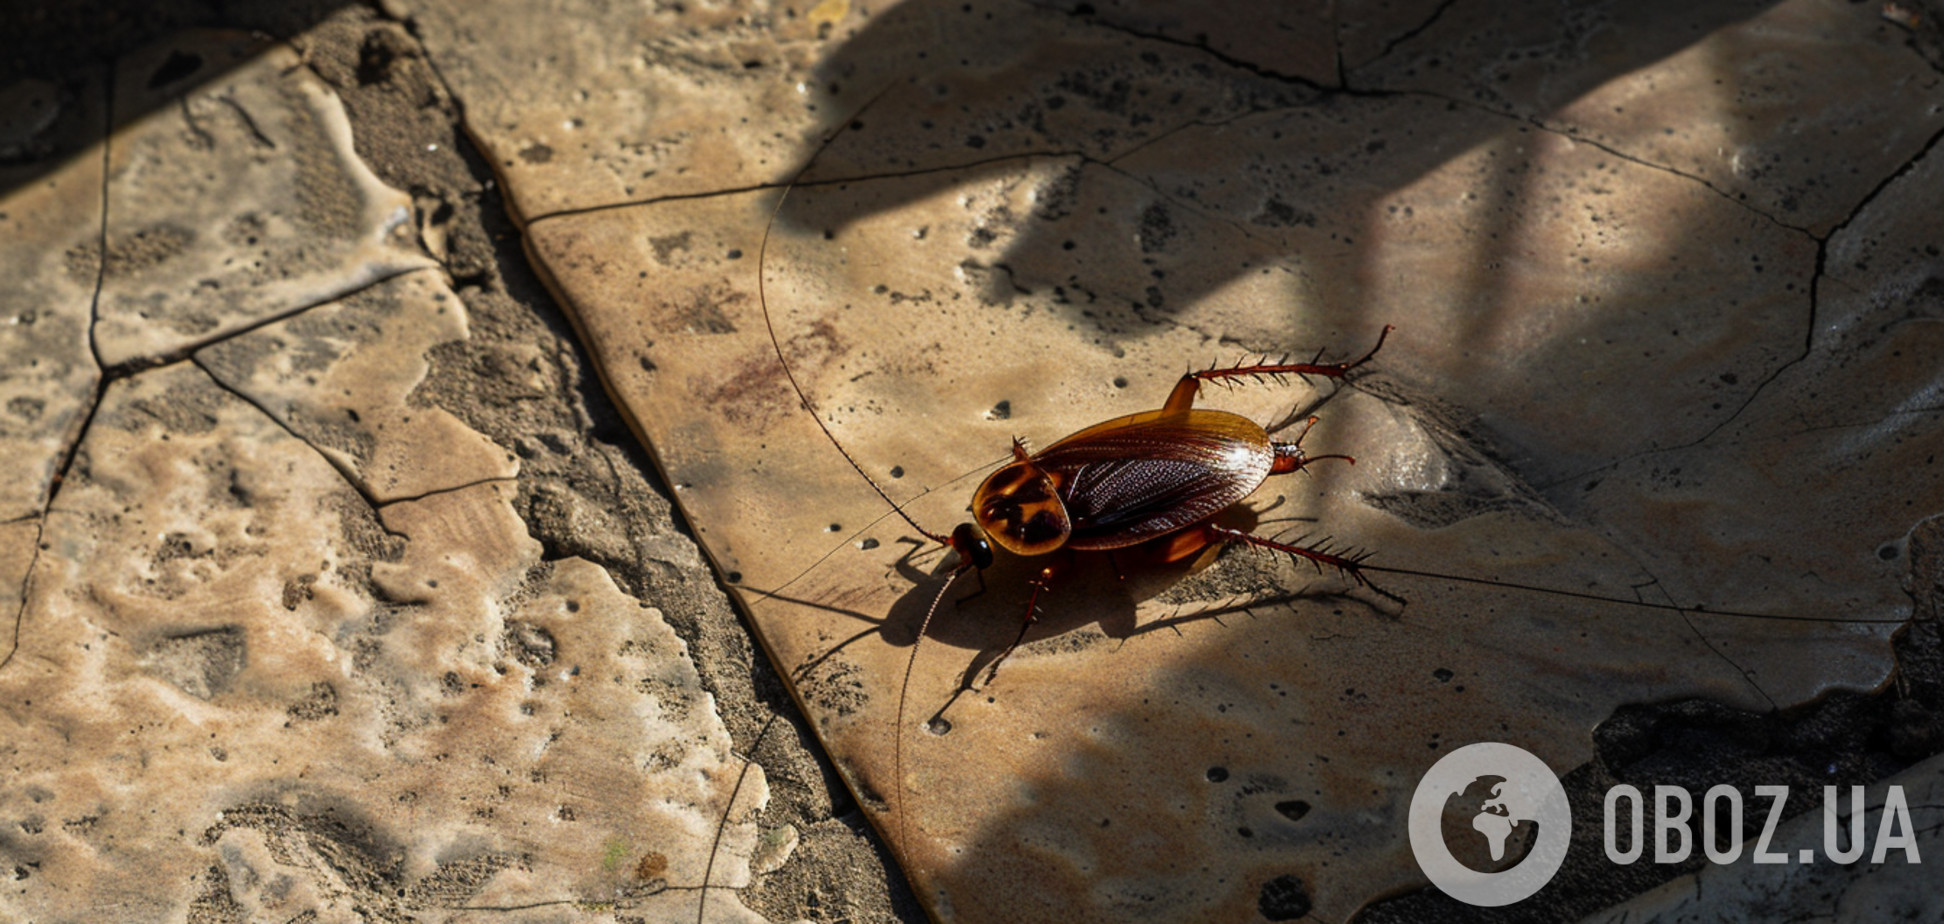 Тараканов больше не будет: как надолго избавиться от вредителей дома